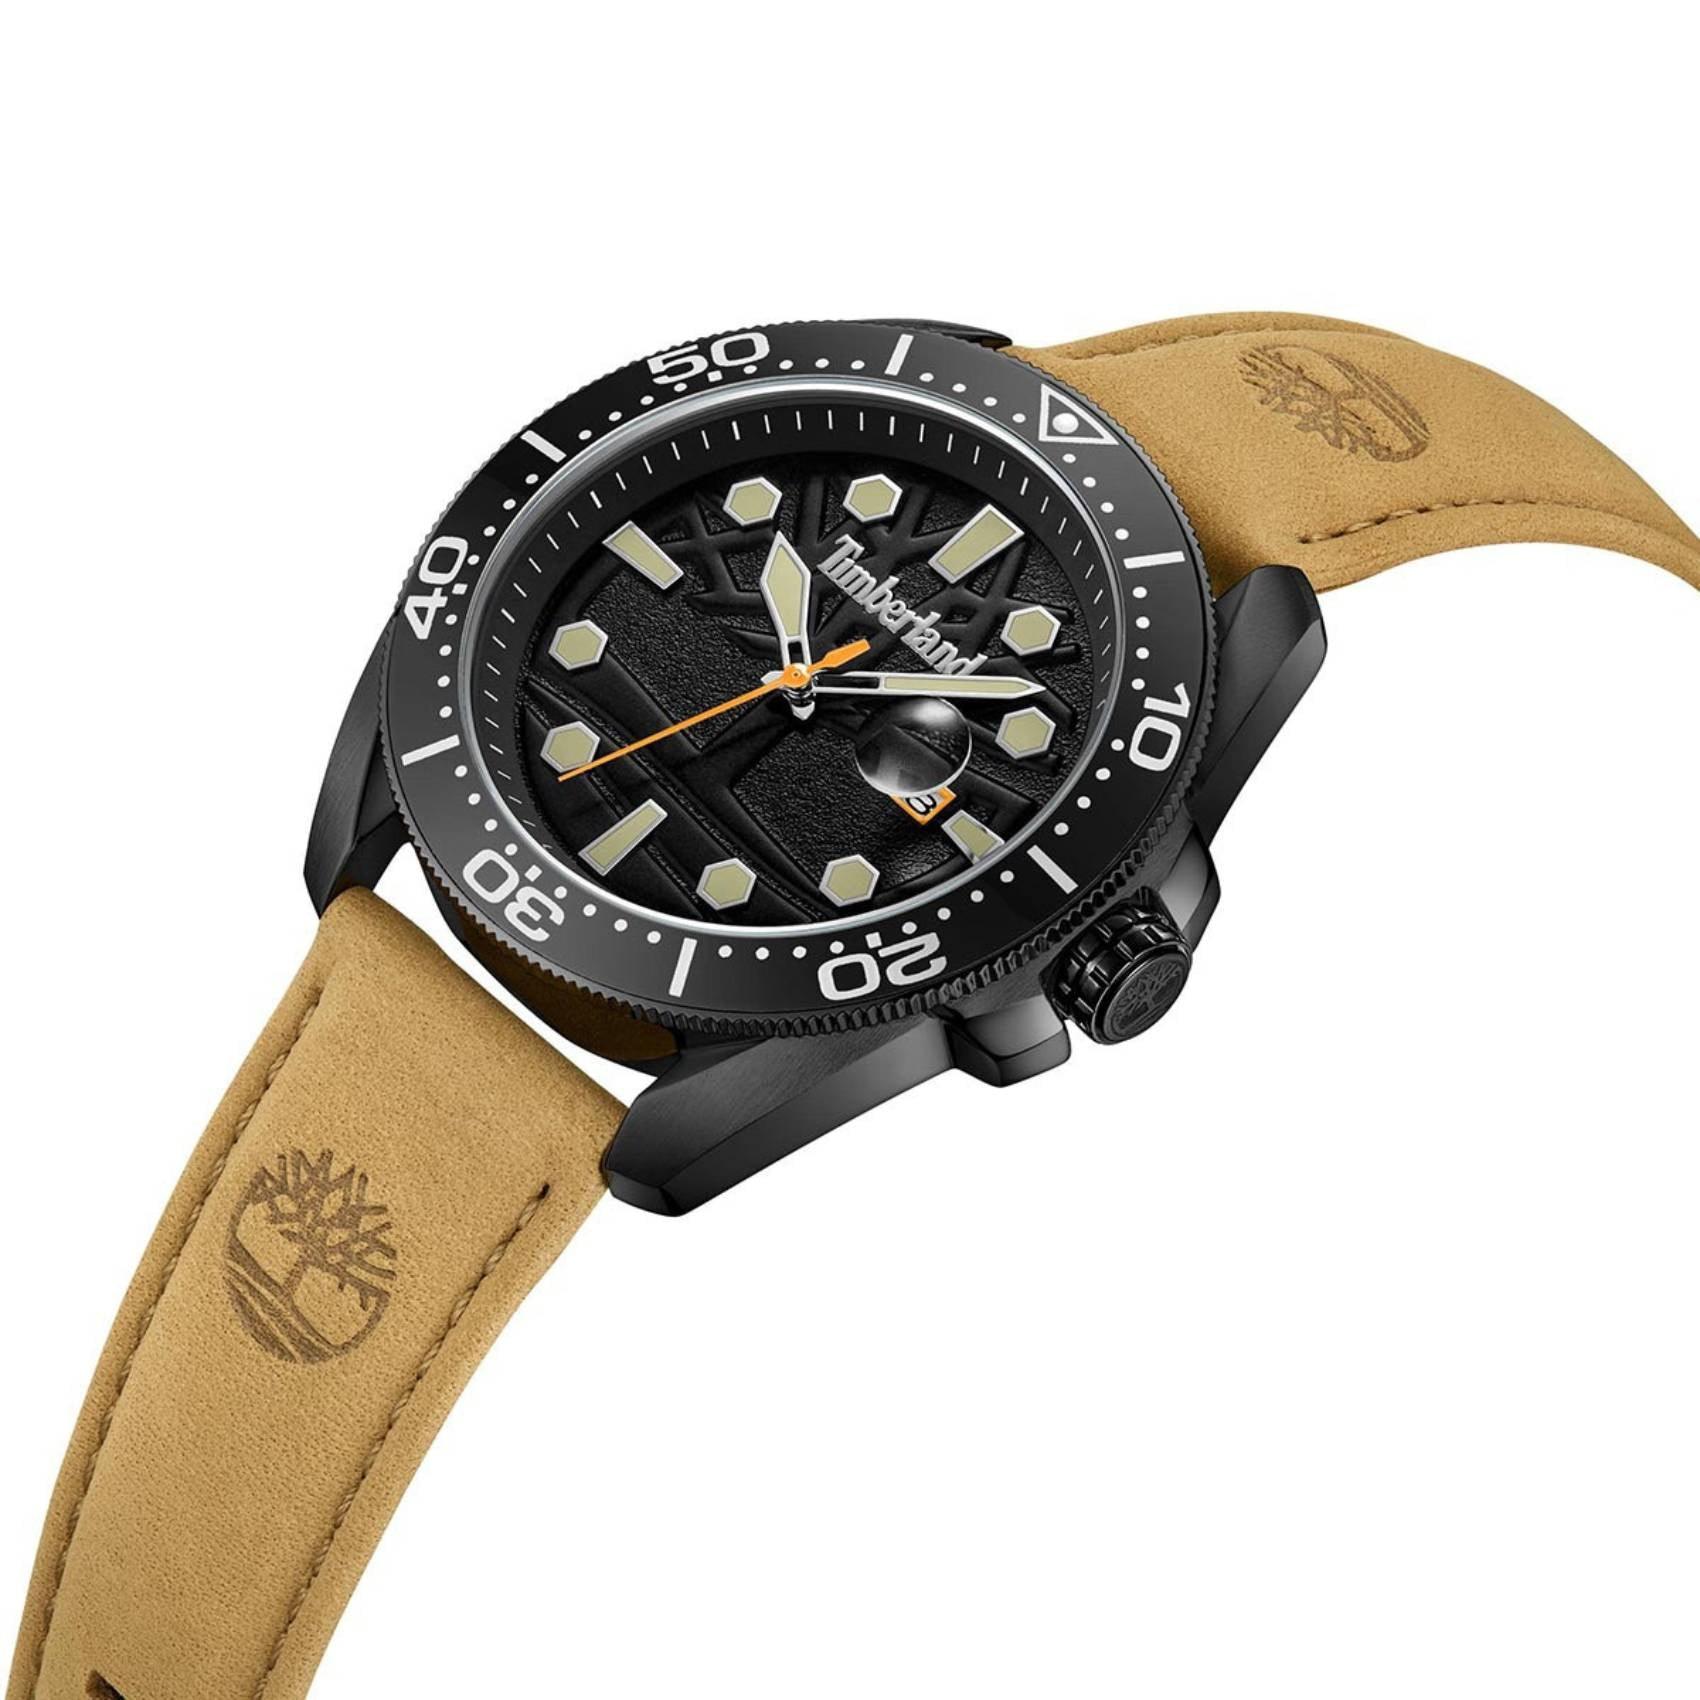 Ανδρικό ρολόι Timberland Carrigan TDWGB2230601 με ταμπά δερμάτινο λουράκι και μαύρο καντράν διαμέτρου 44mm με ένδειξη ημερομηνίας.